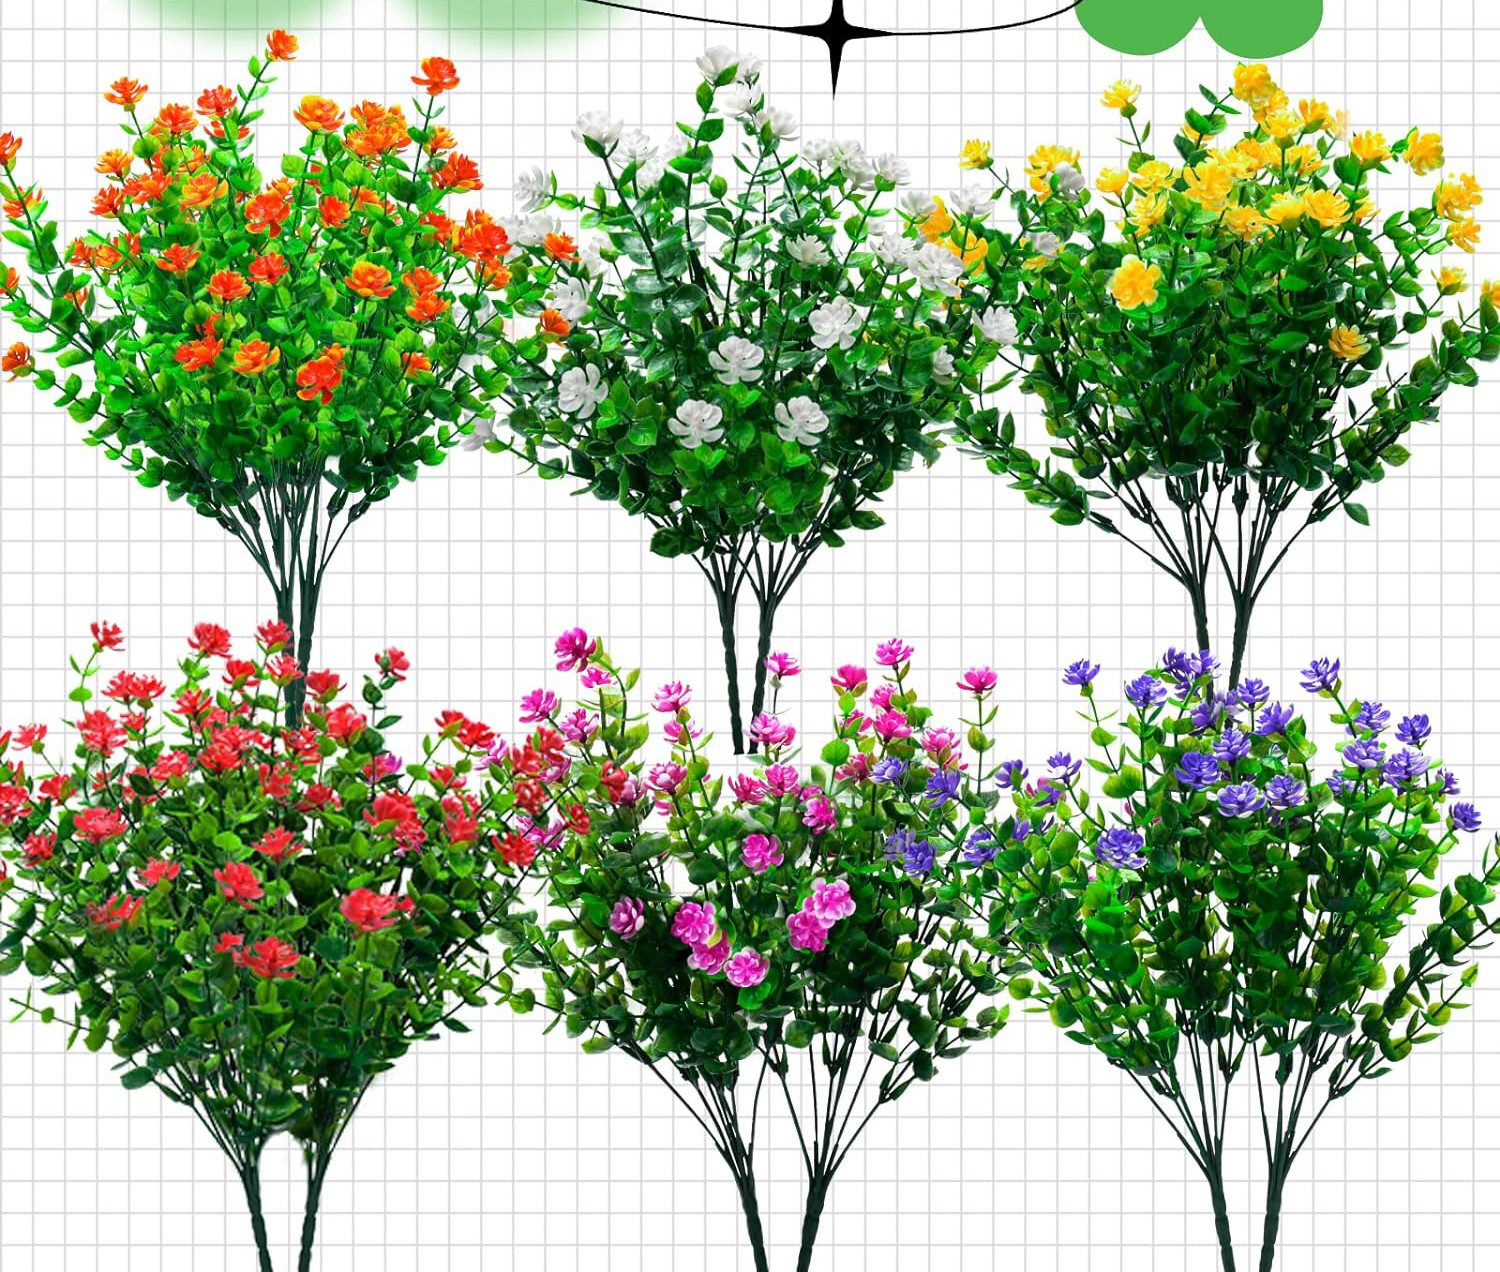 Kunstblumenstrauß Outdoor künstliche Blumen,Höhe 36 cm, Naturdeko, Coonoor, Künstliche Pflanzen